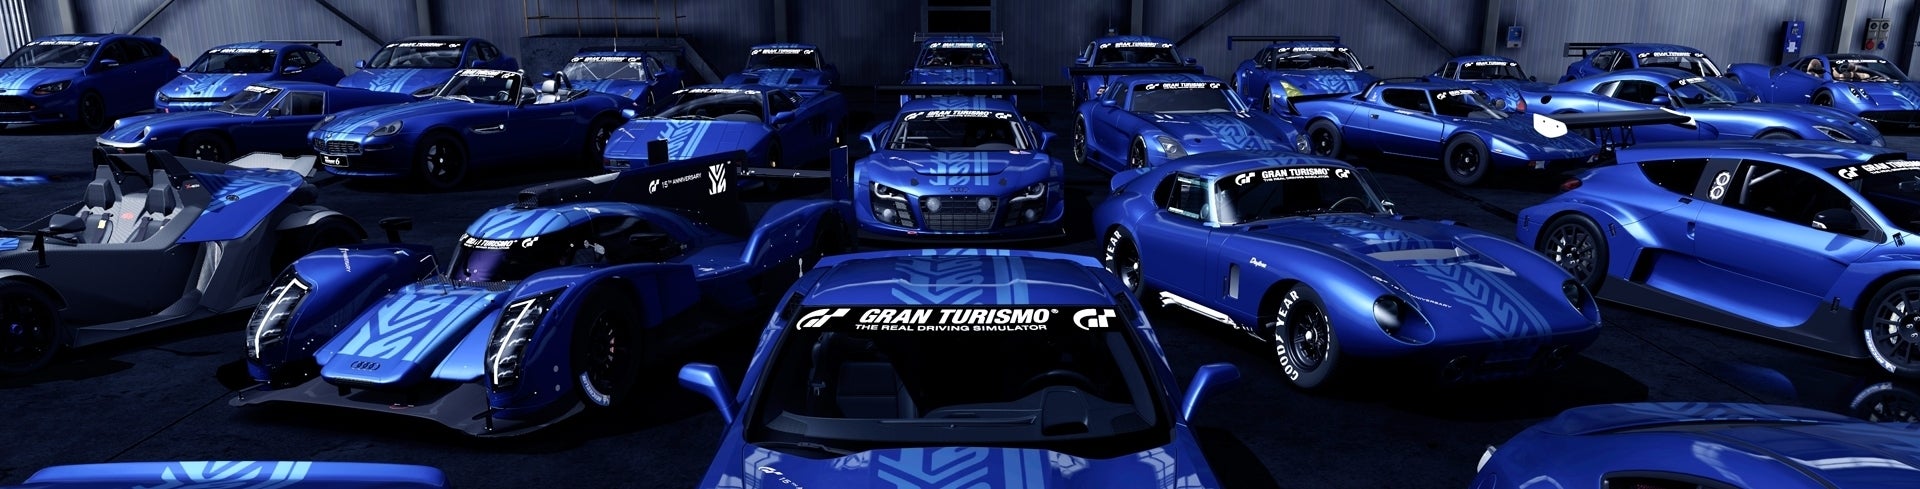 Imagen para Análisis de Gran Turismo 6